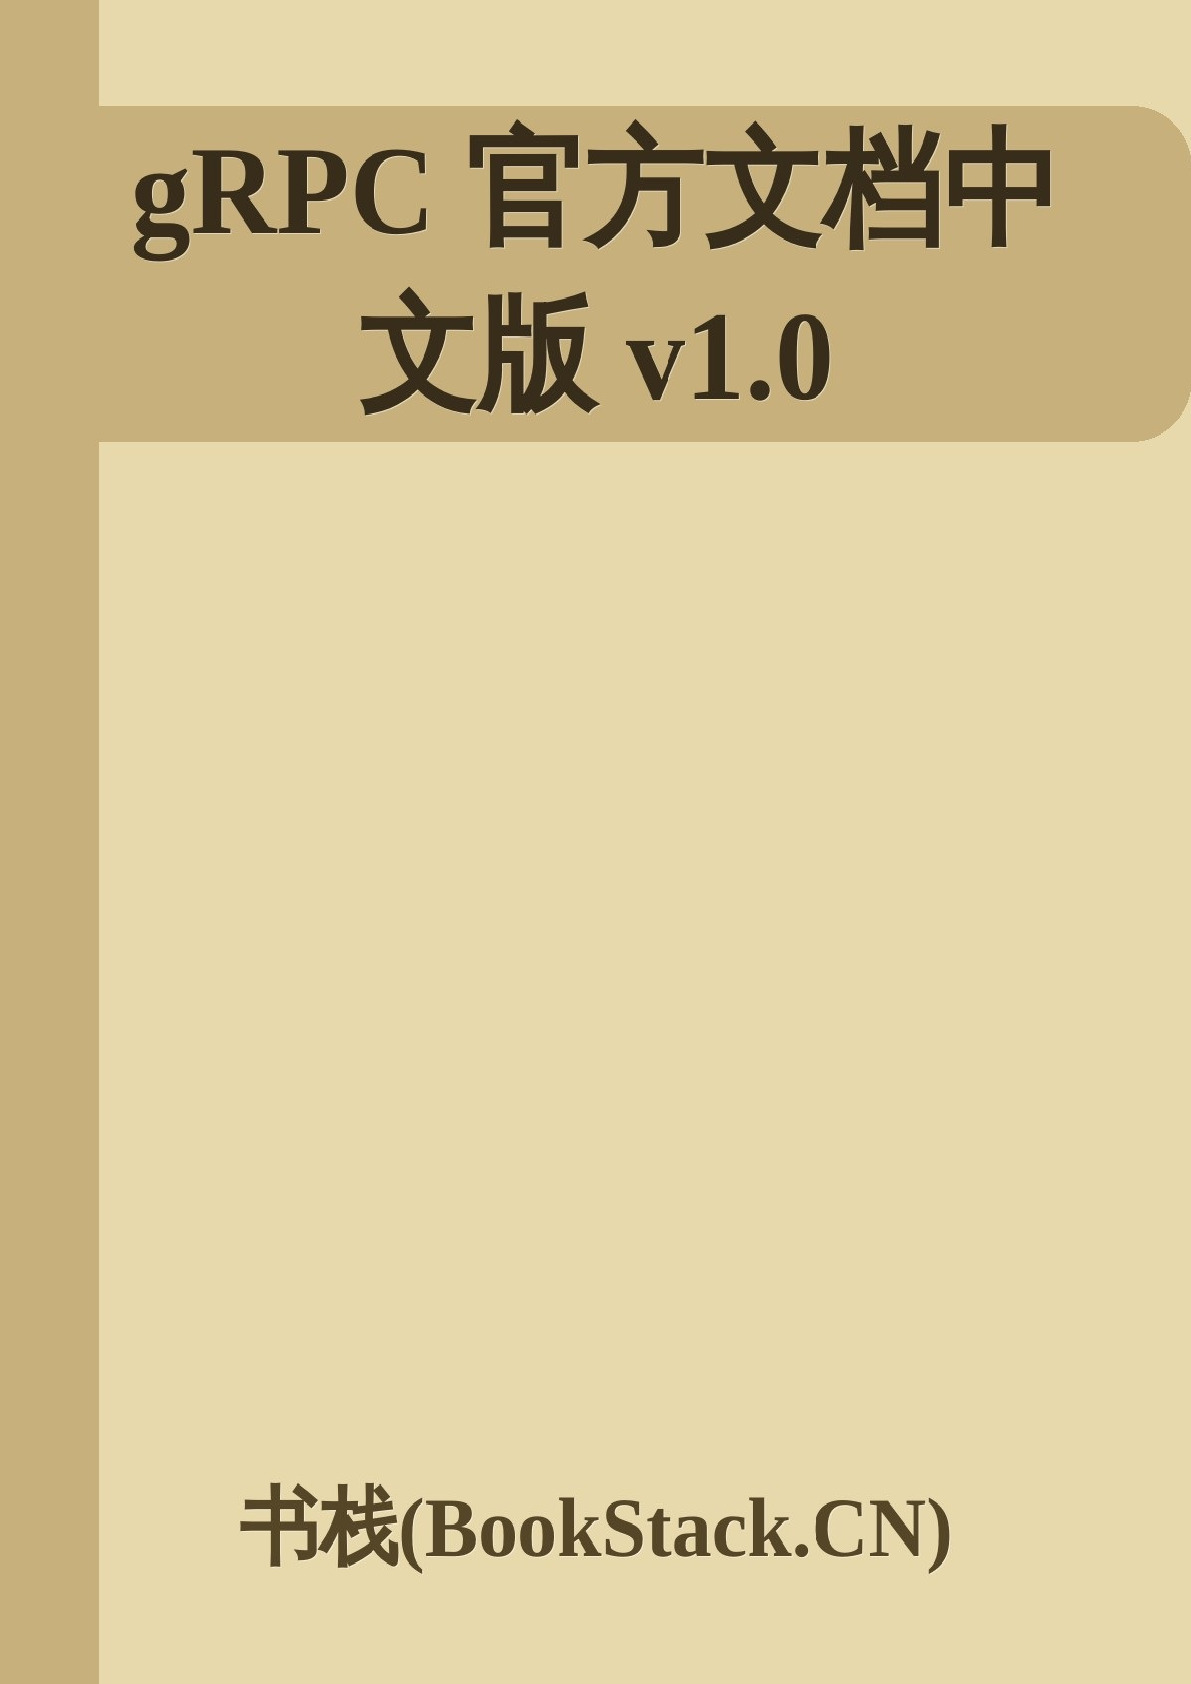 gRPC官方文档中文版v1.0